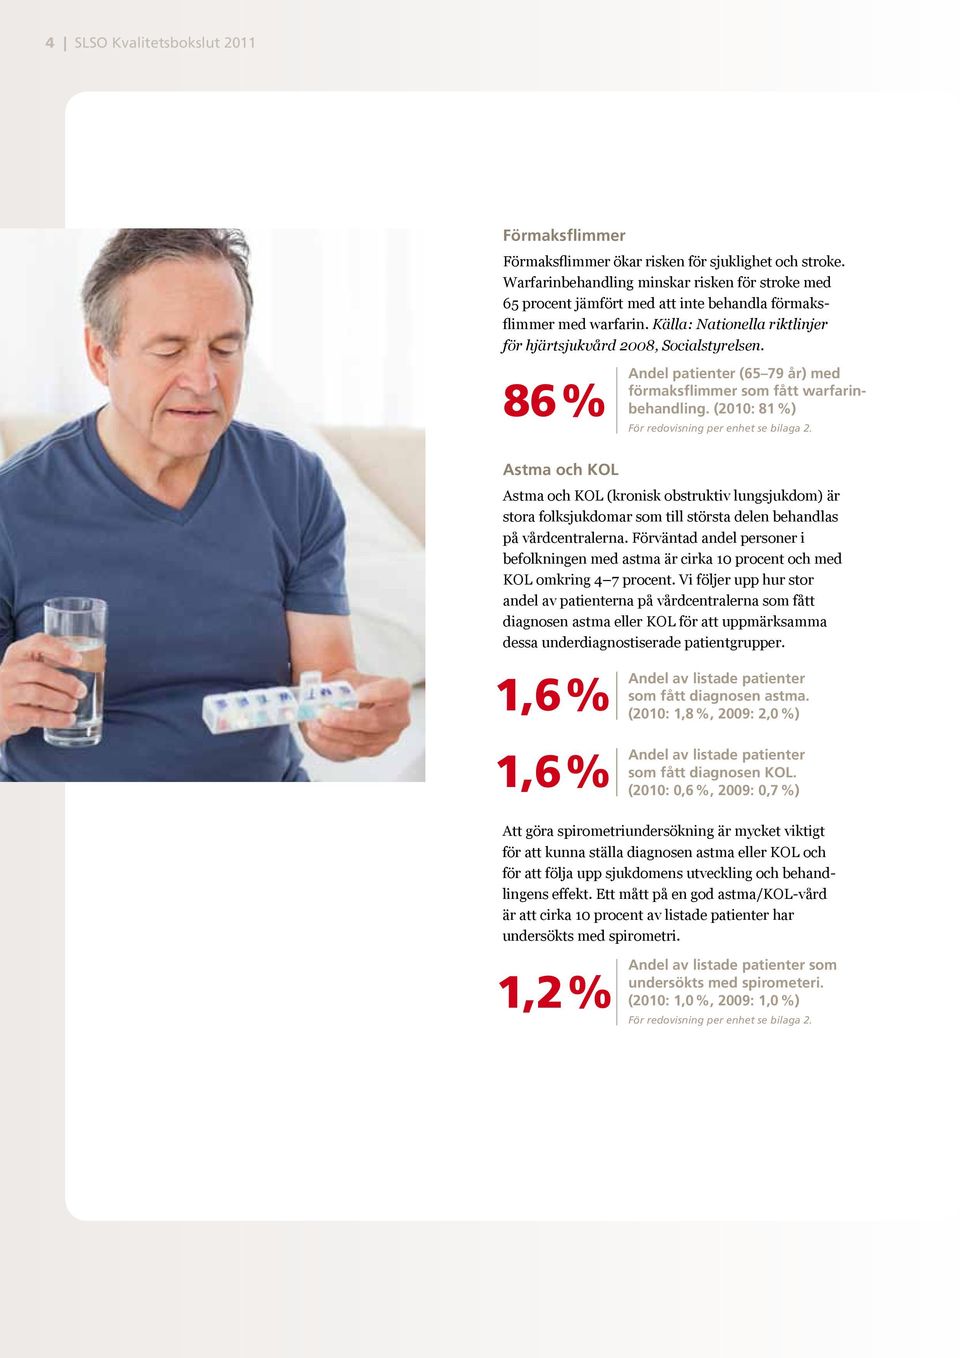 86 % Andel patienter (65 79 år) med förmaksflimmer som fått warfarinbehandling. (2010: 81 %) För redovisning per enhet se bilaga 2.